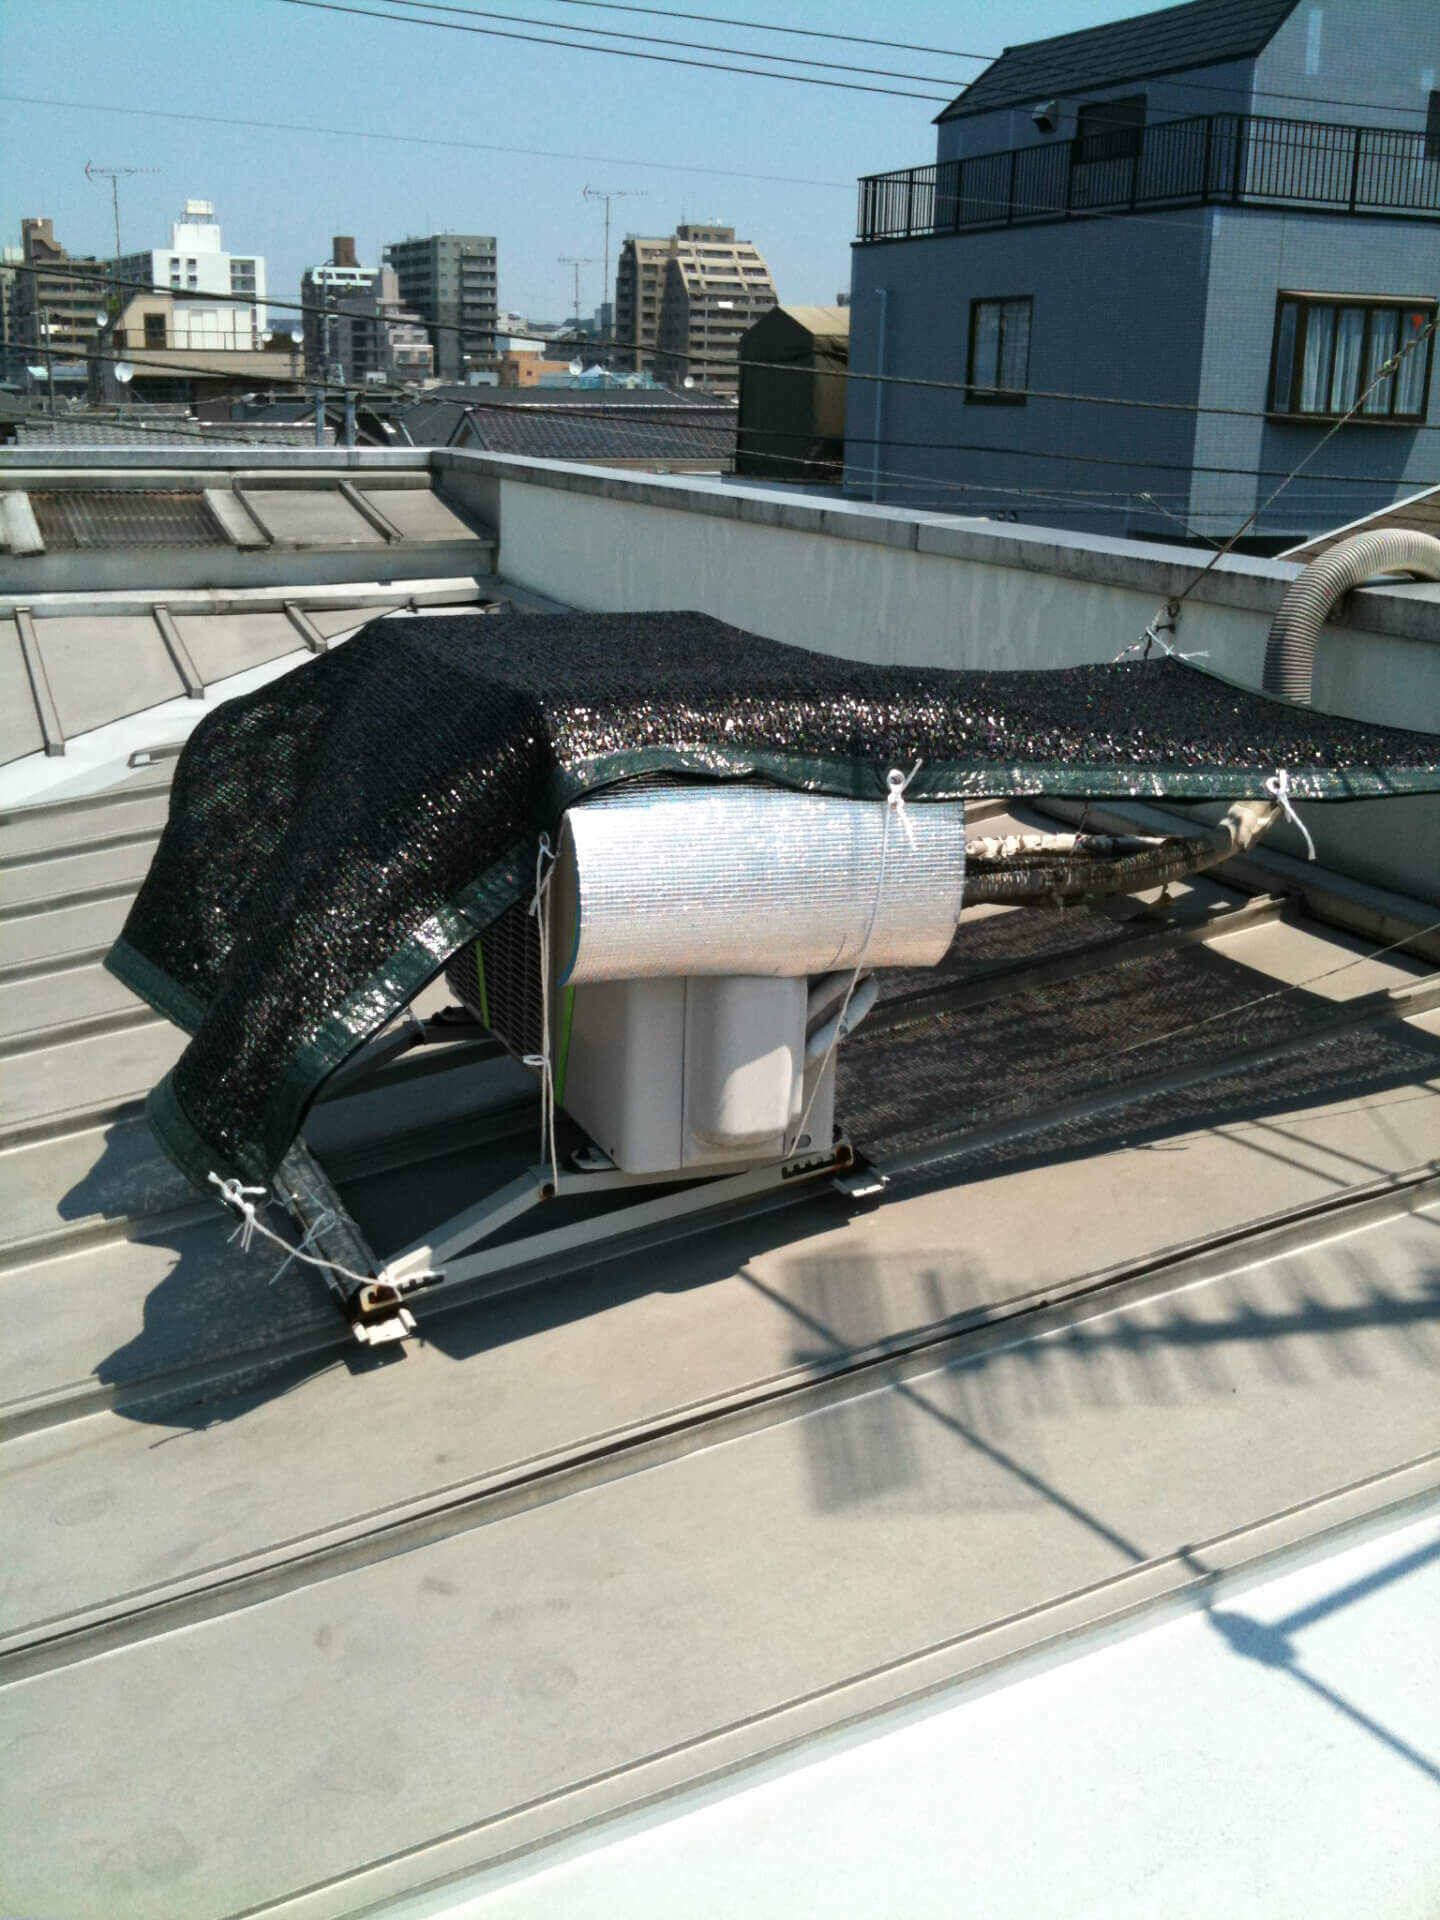 事務所のエアコンの
室外機は屋根上のため、簡易的な応急処置をしましたが、だめでした
